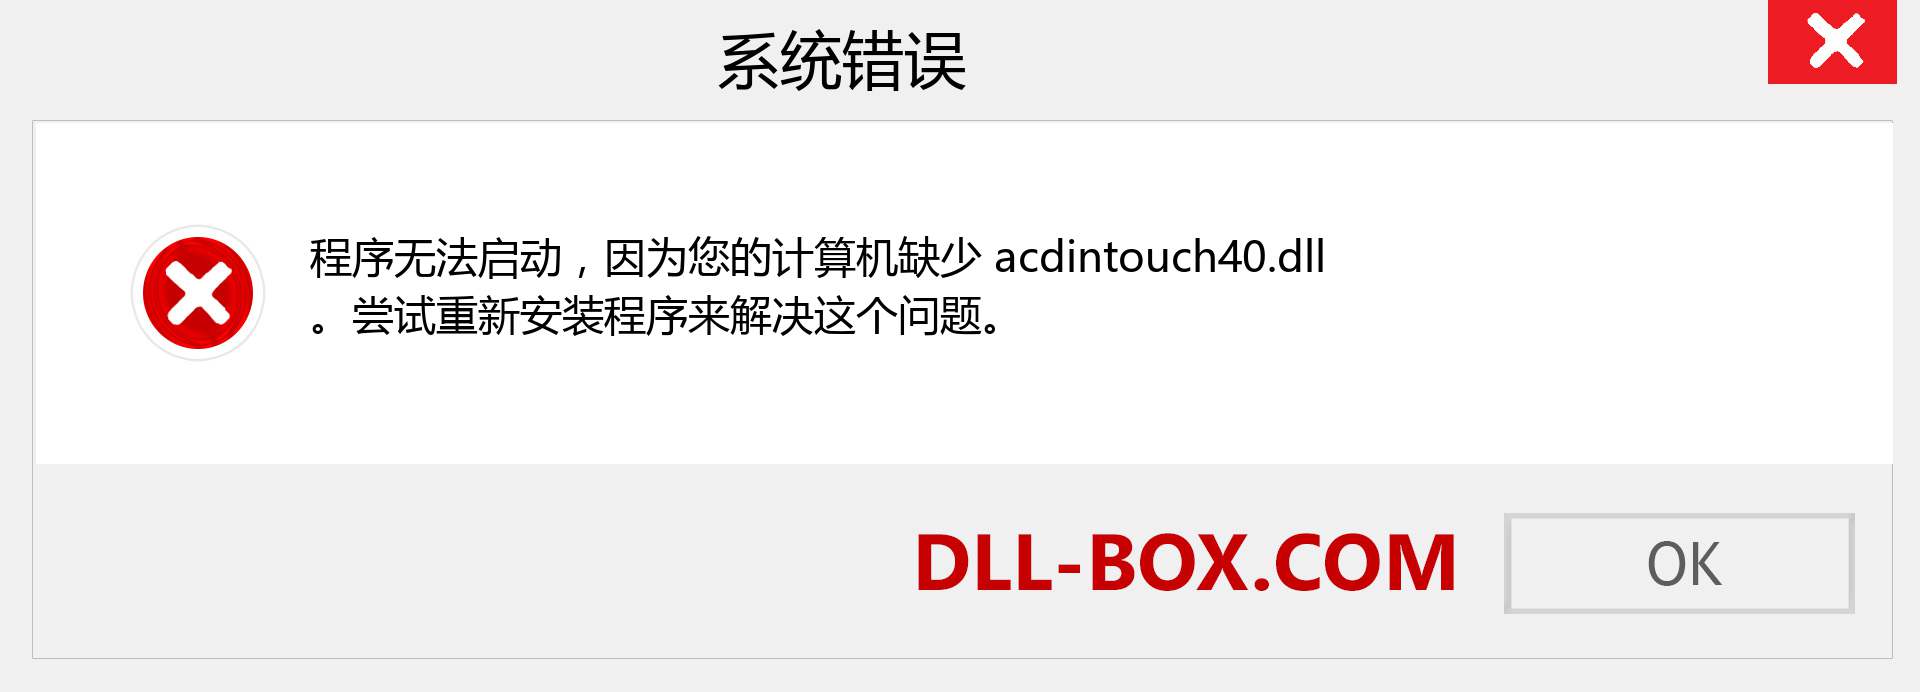 acdintouch40.dll 文件丢失？。 适用于 Windows 7、8、10 的下载 - 修复 Windows、照片、图像上的 acdintouch40 dll 丢失错误